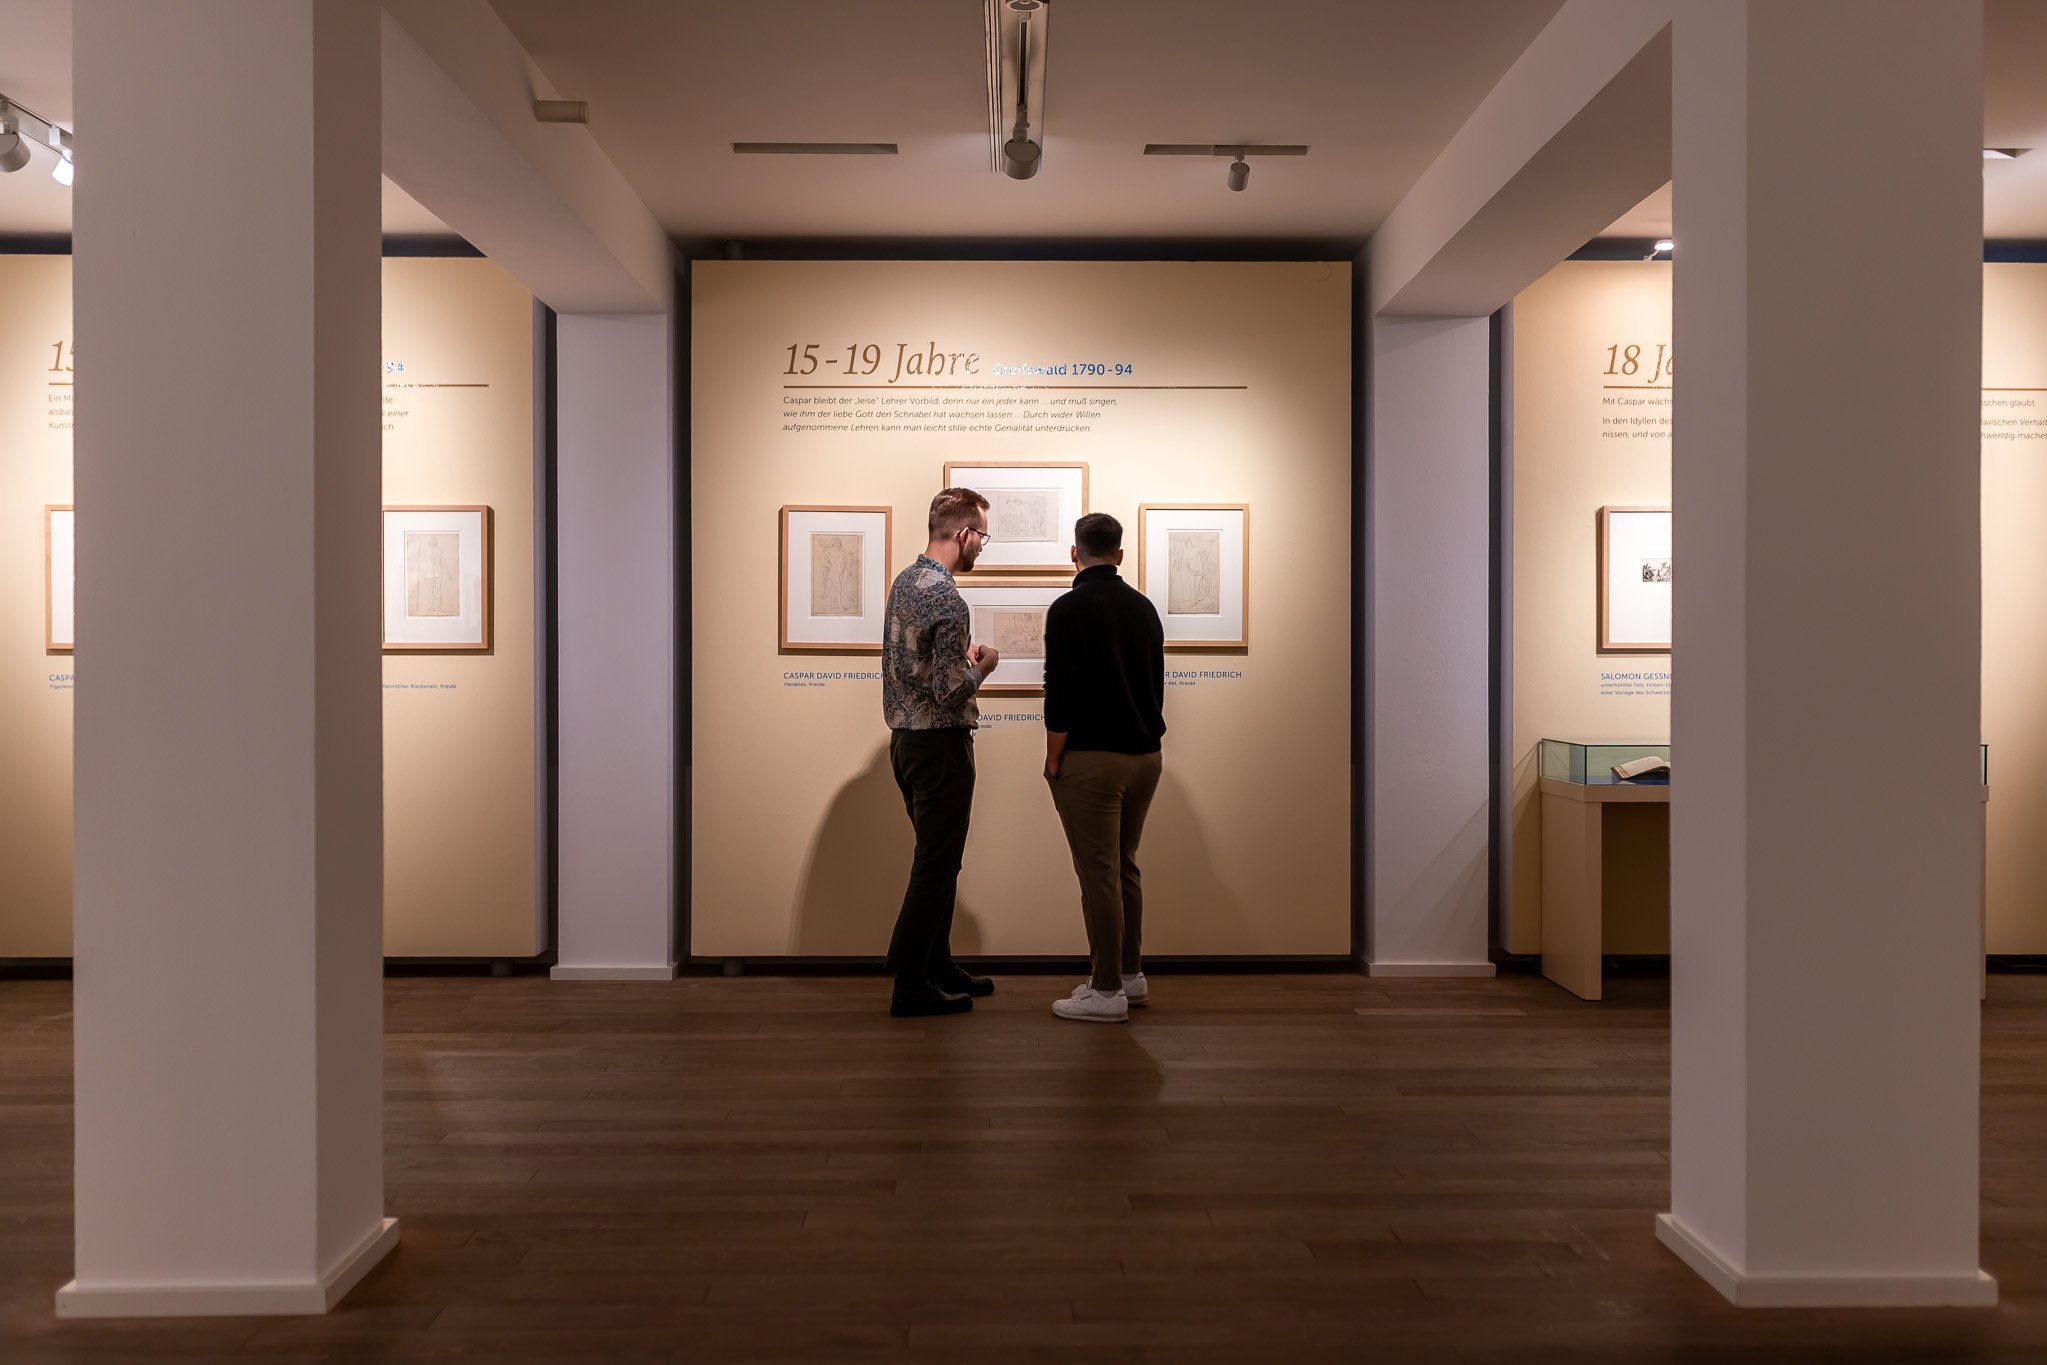 Blick in den Ausstellungsraum. Zwischen zwei Pfeilern hinten zwei Besucher, die mehrere Grafiken betrachten.